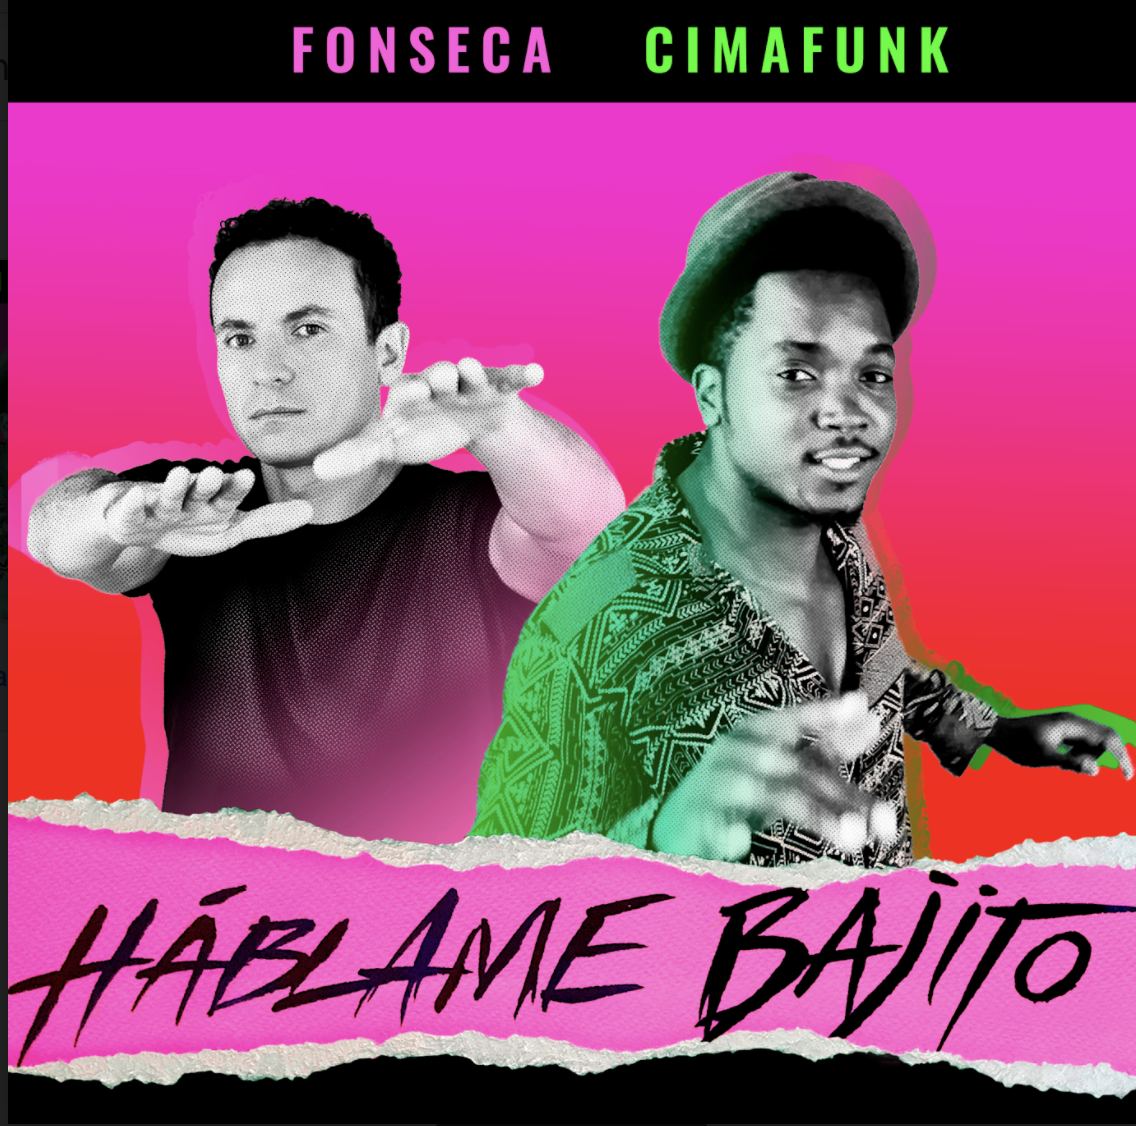 Fonseca y Cimafunk estrenan 'Hablame Bajito'.